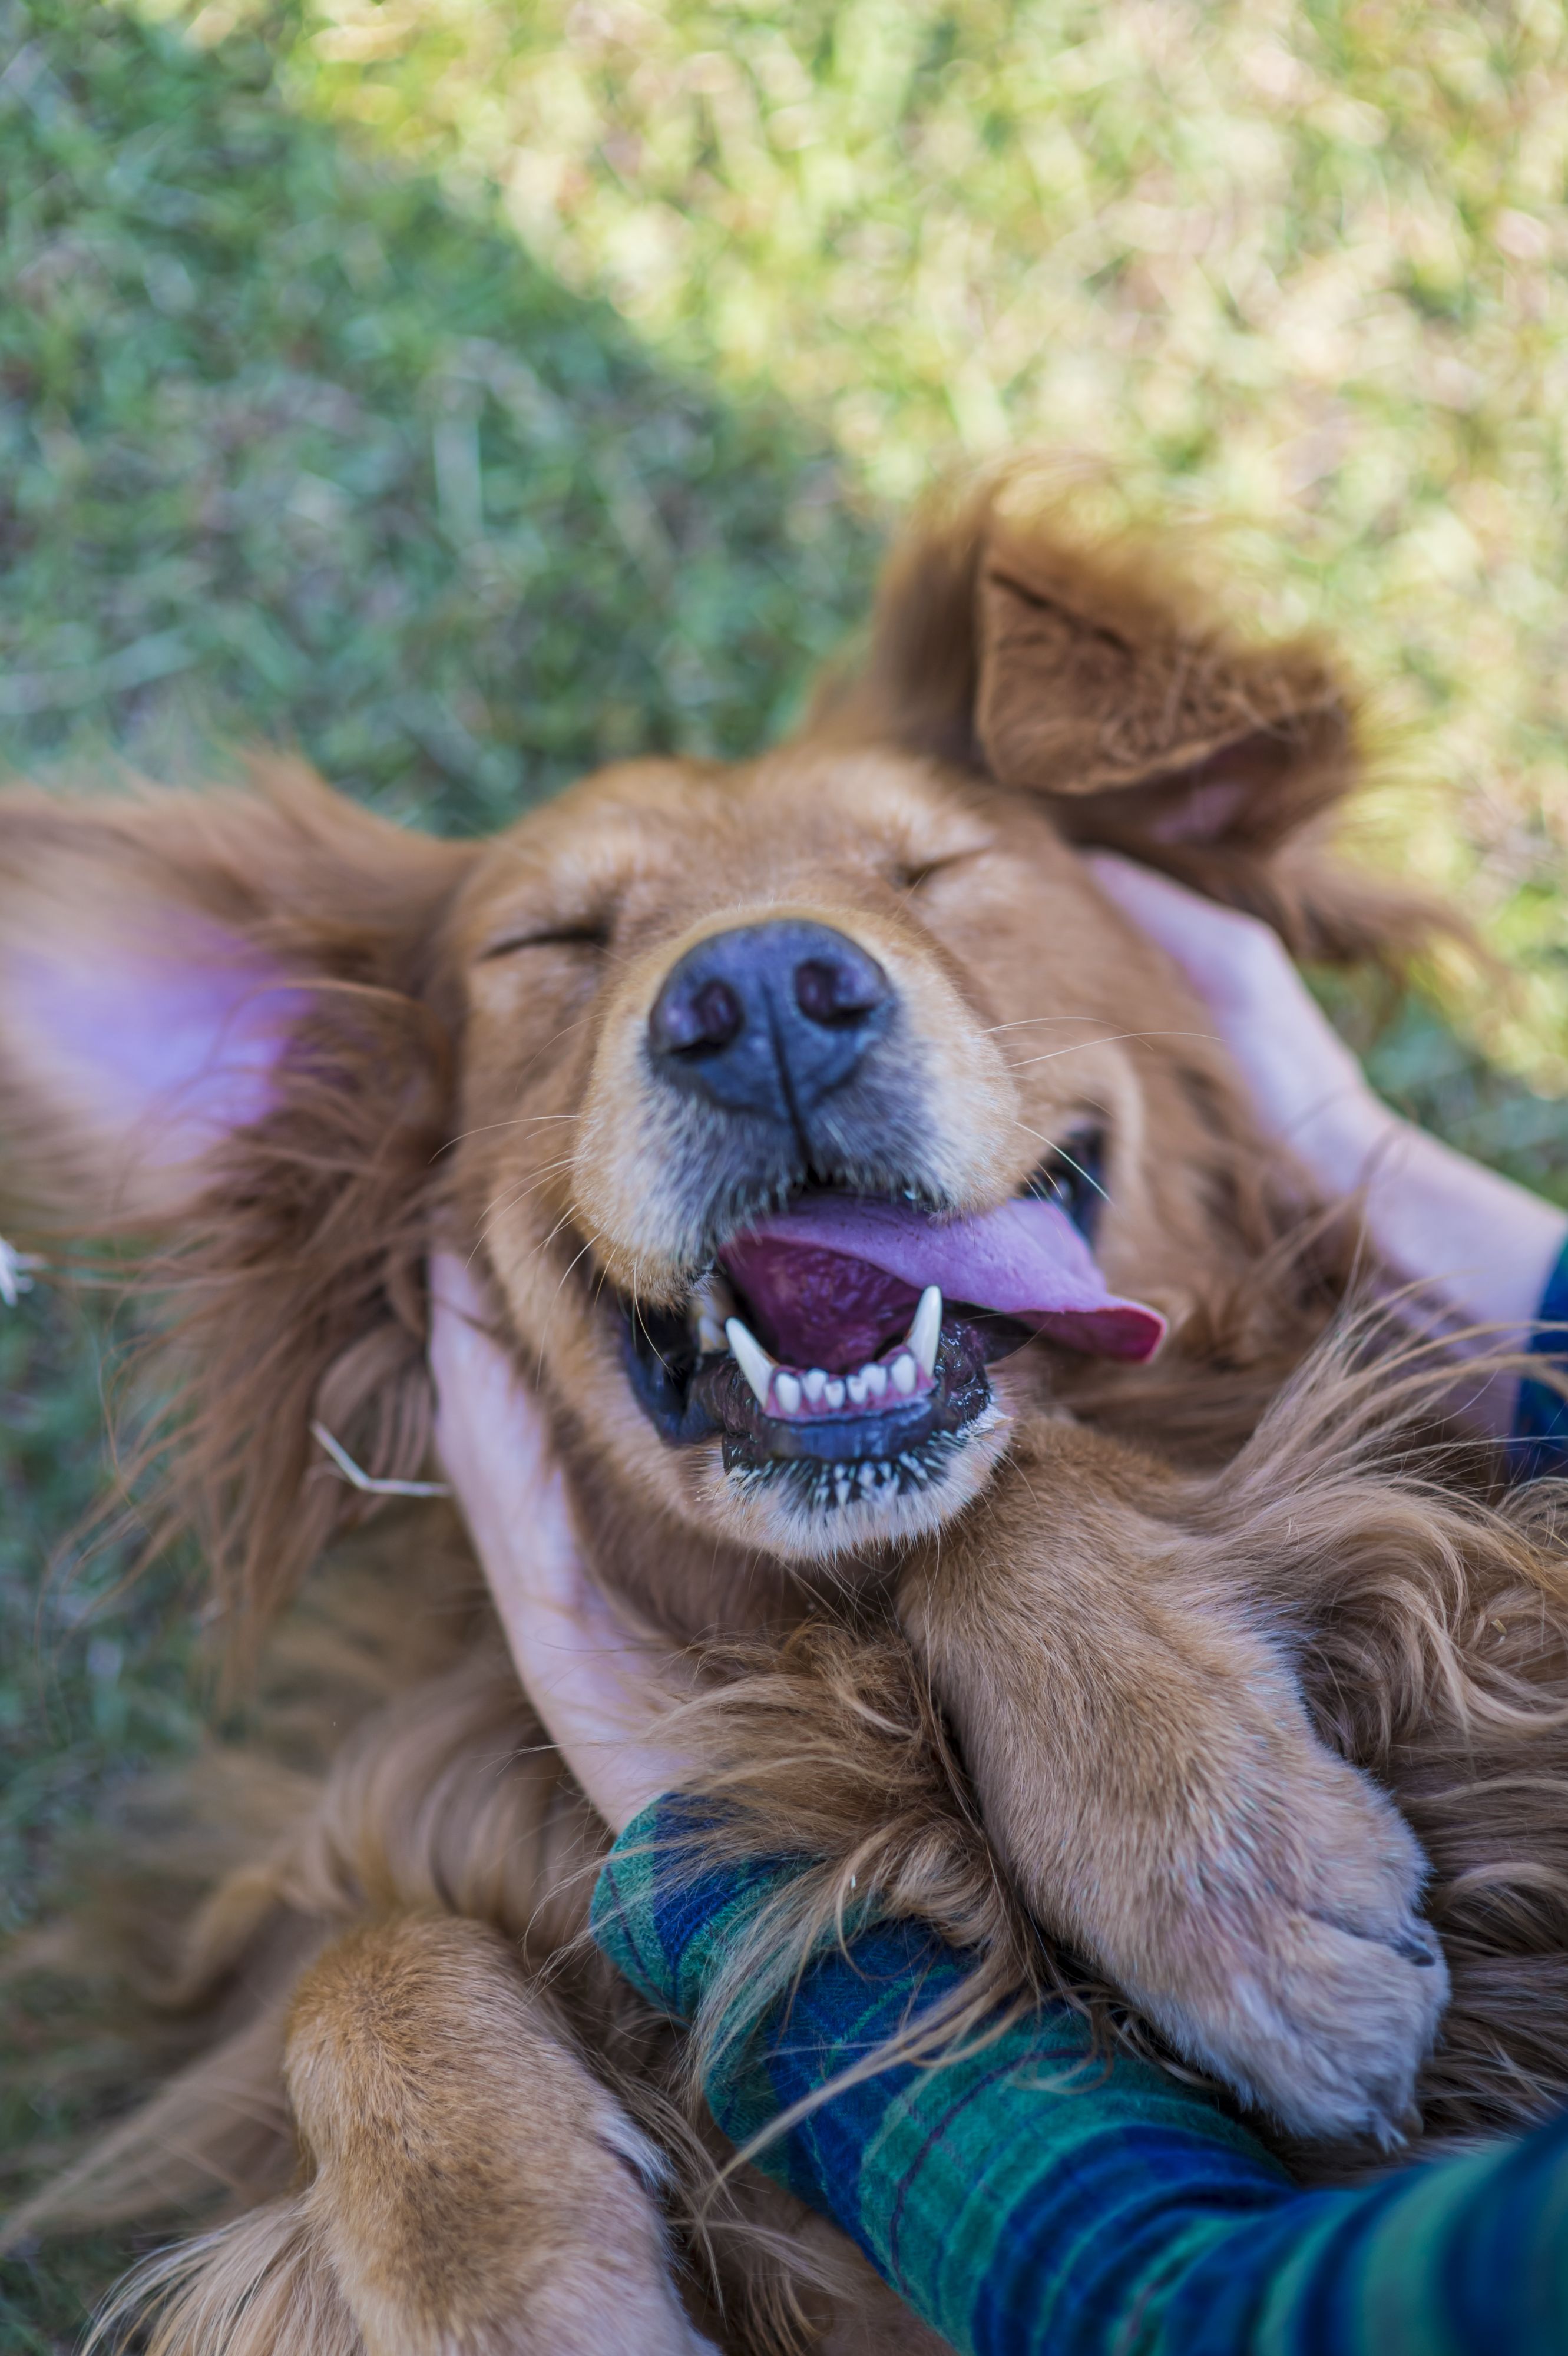 この笑顔がたまらない 癒しの犬画像集